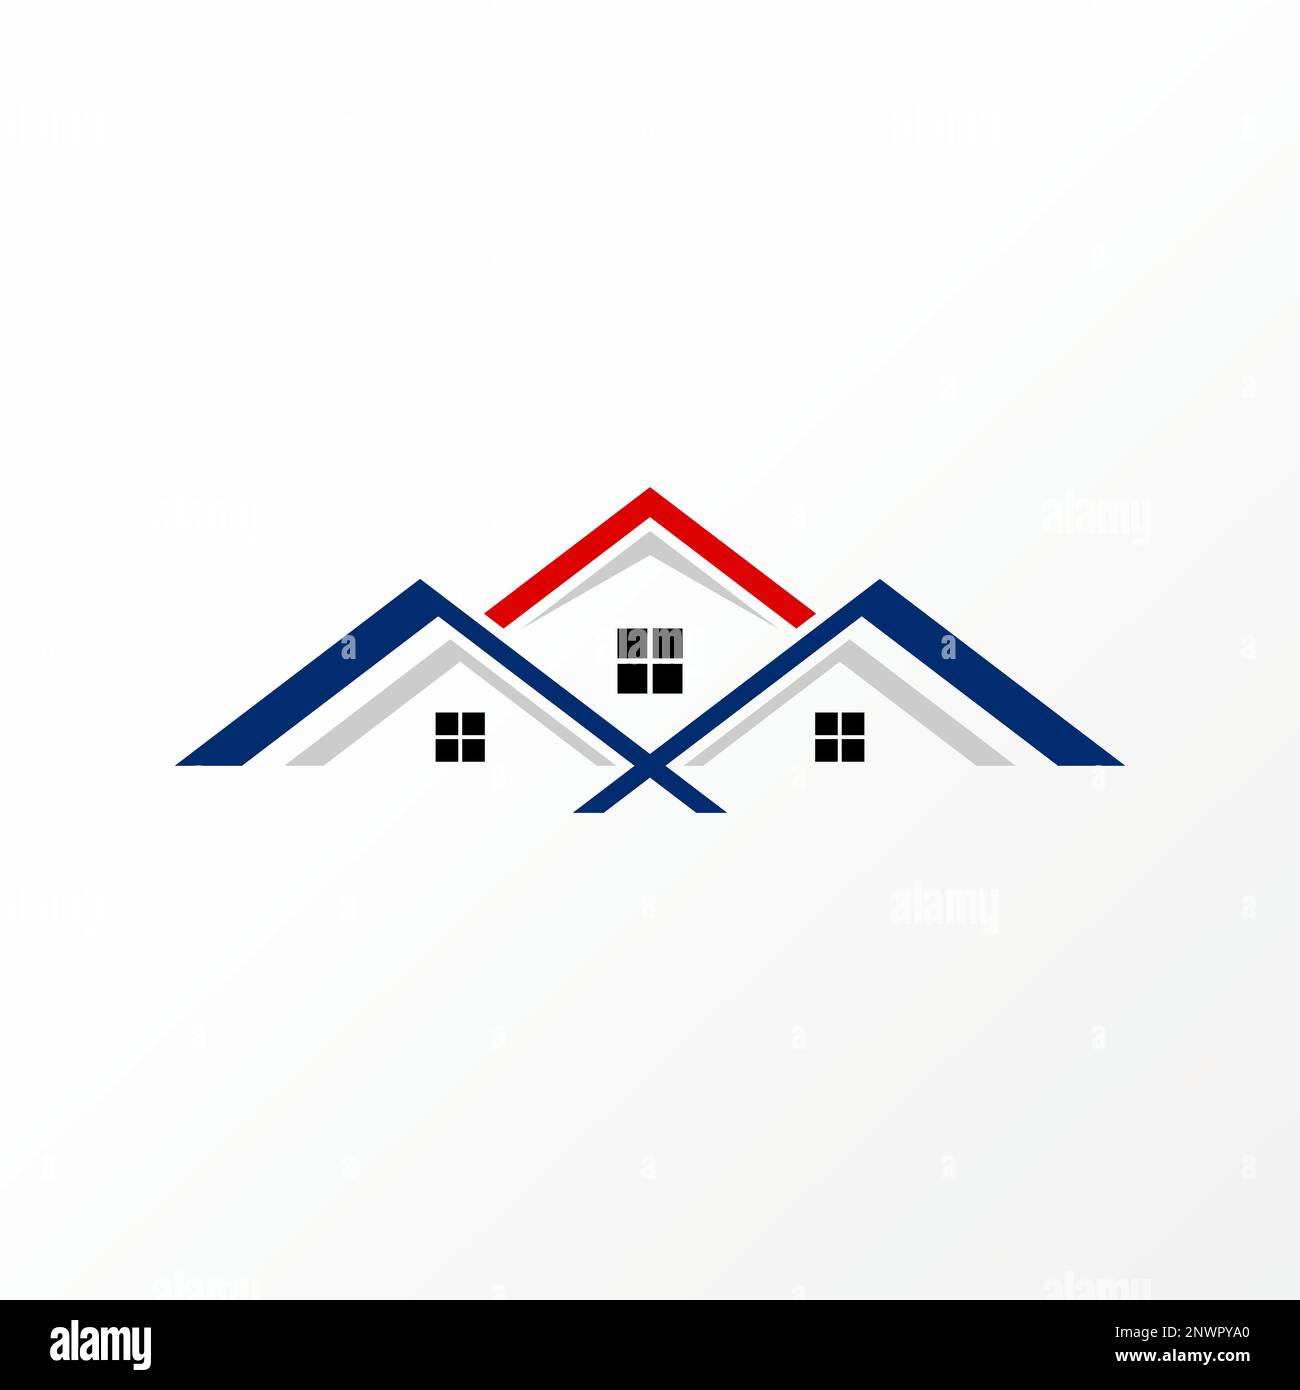 Einfaches und sehr einzigartiges 3-fach Dachhaus von vorne nach hinten mit Fenstern Grafiksymbol Logo Design abstraktes Konzept Vektorstock oder Haus Stock Vektor